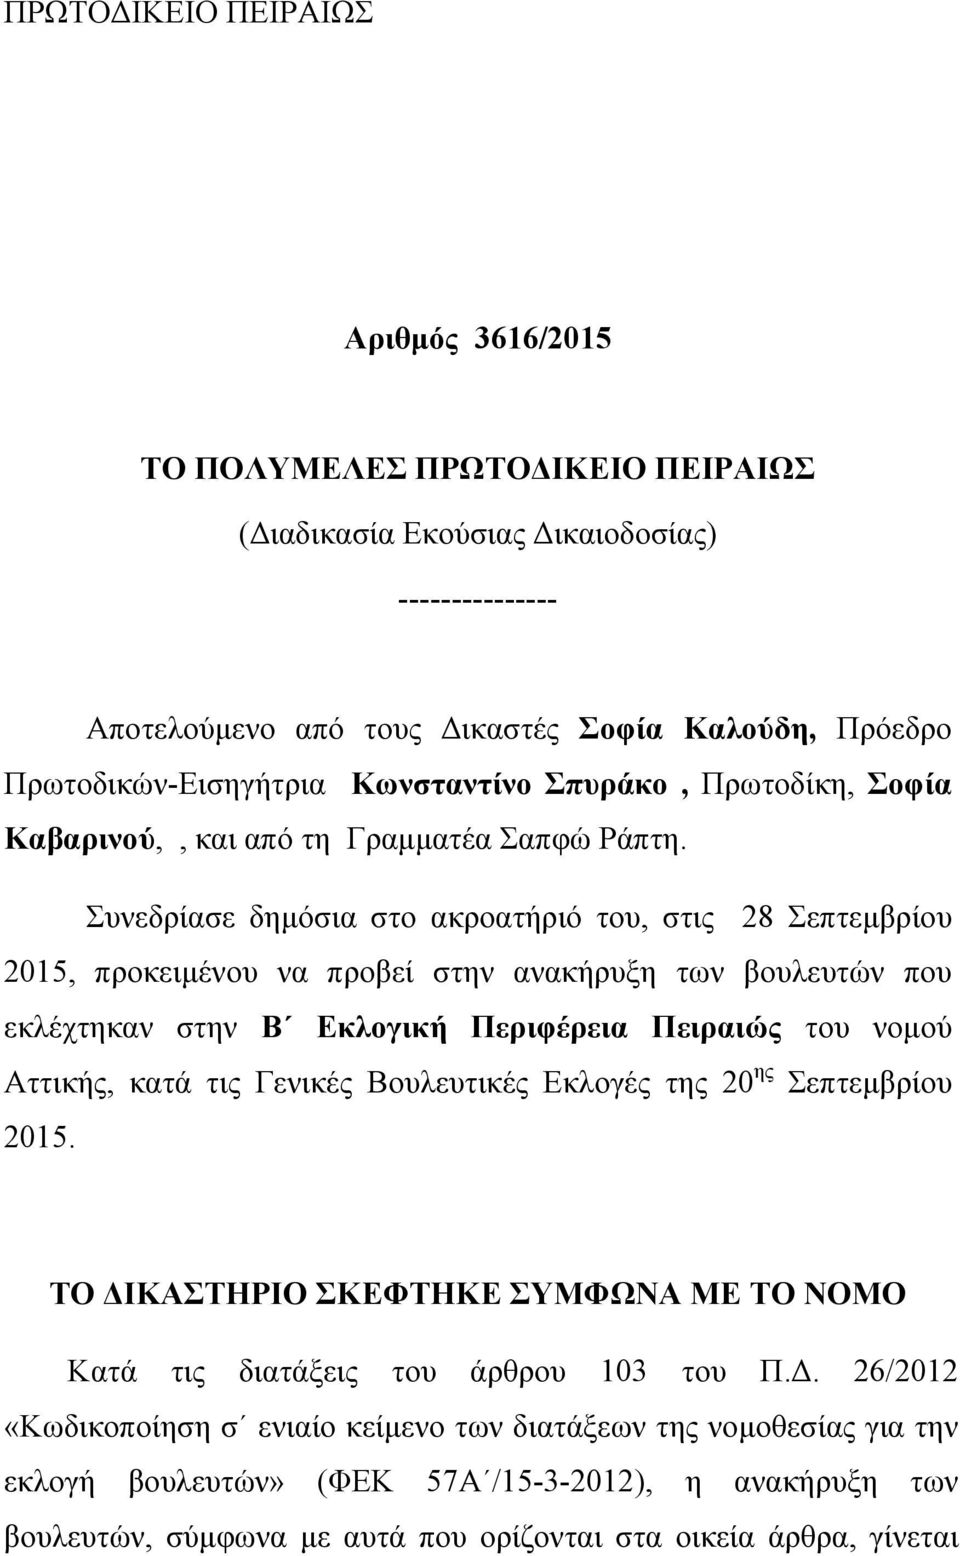 Συνεδρίασε δημόσια στο ακροατήριό του, στις 28 Σεπτεμβρίου 2015, προκειμένου να προβεί στην ανακήρυξη των βουλευτών που εκλέχτηκαν στην Β Εκλογική Περιφέρεια Πειραιώς του νομού Αττικής, κατά τις